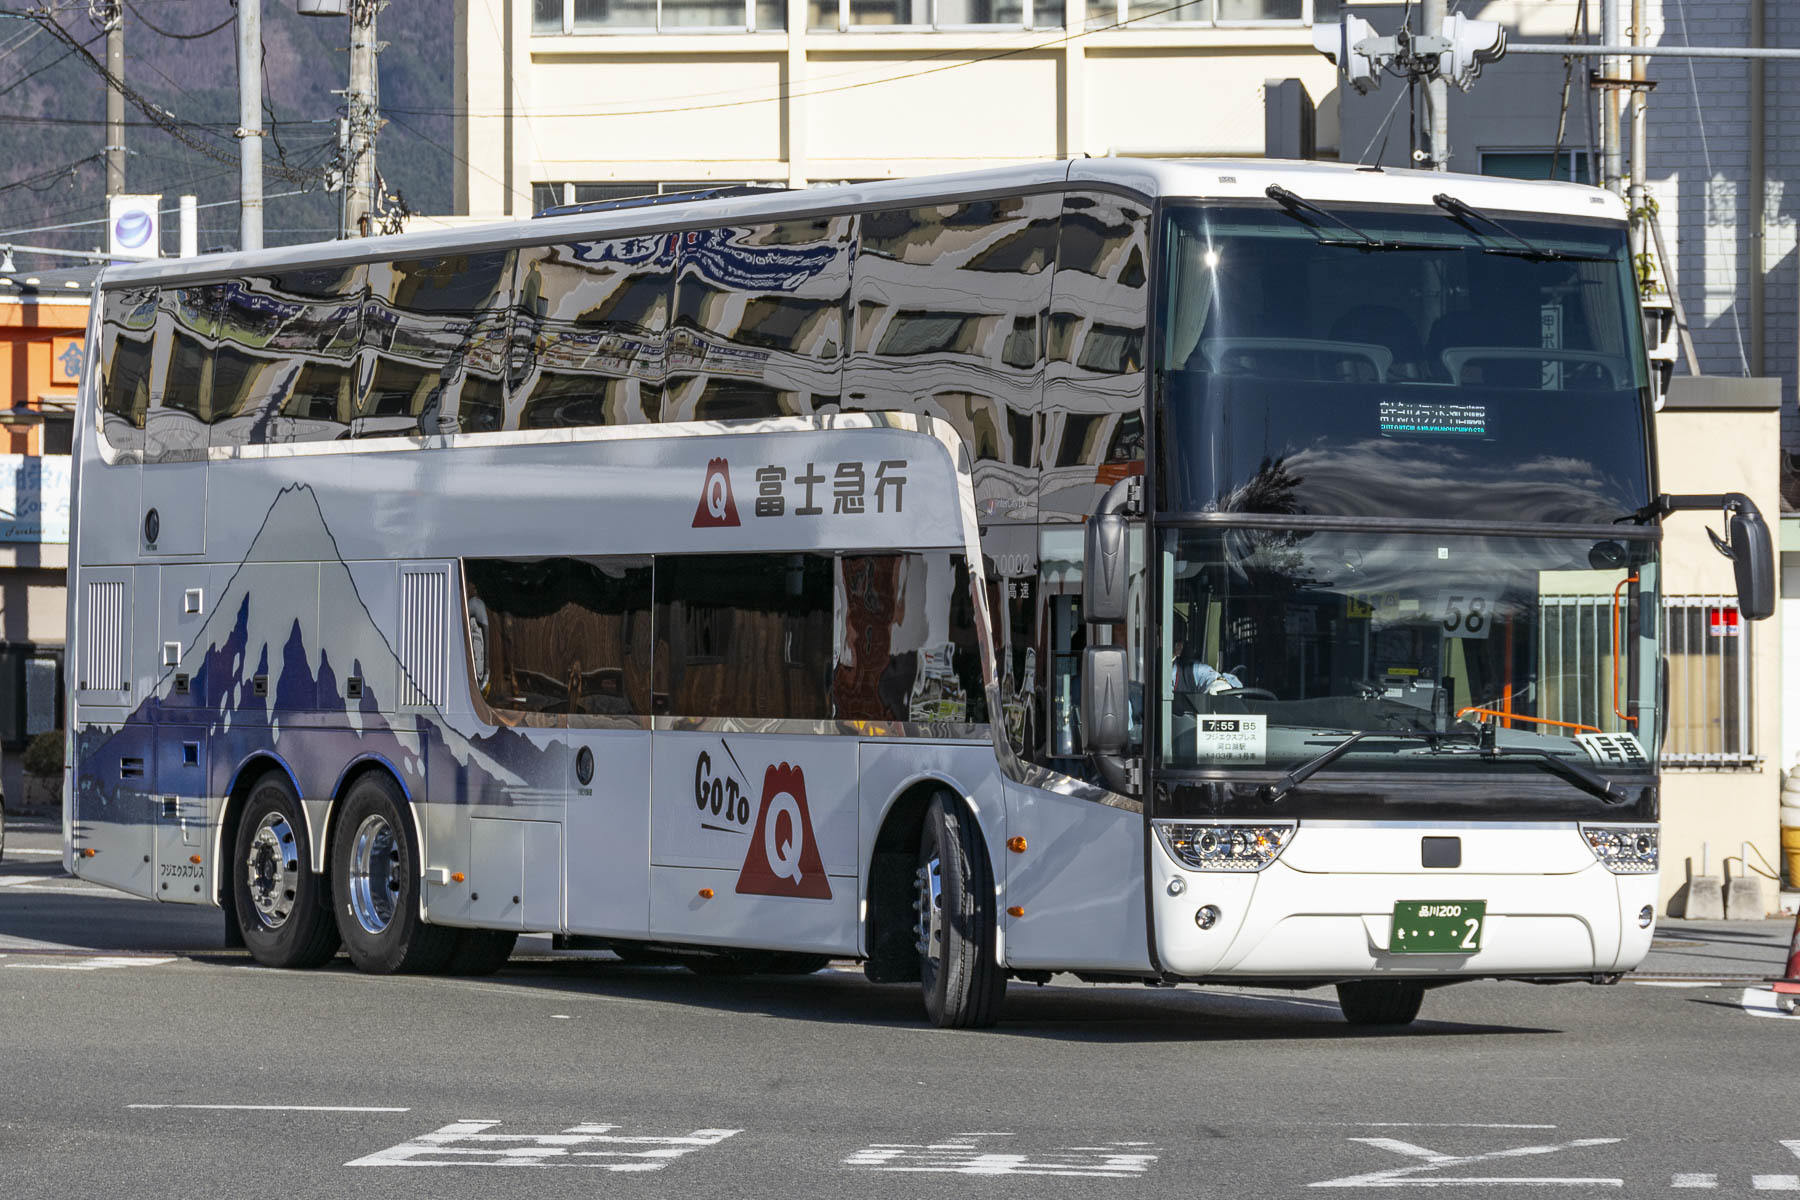 富士急バス / Re:ゼロから始める富士急ハイランド生活ラッピングバス_d0226909_21495687.jpg